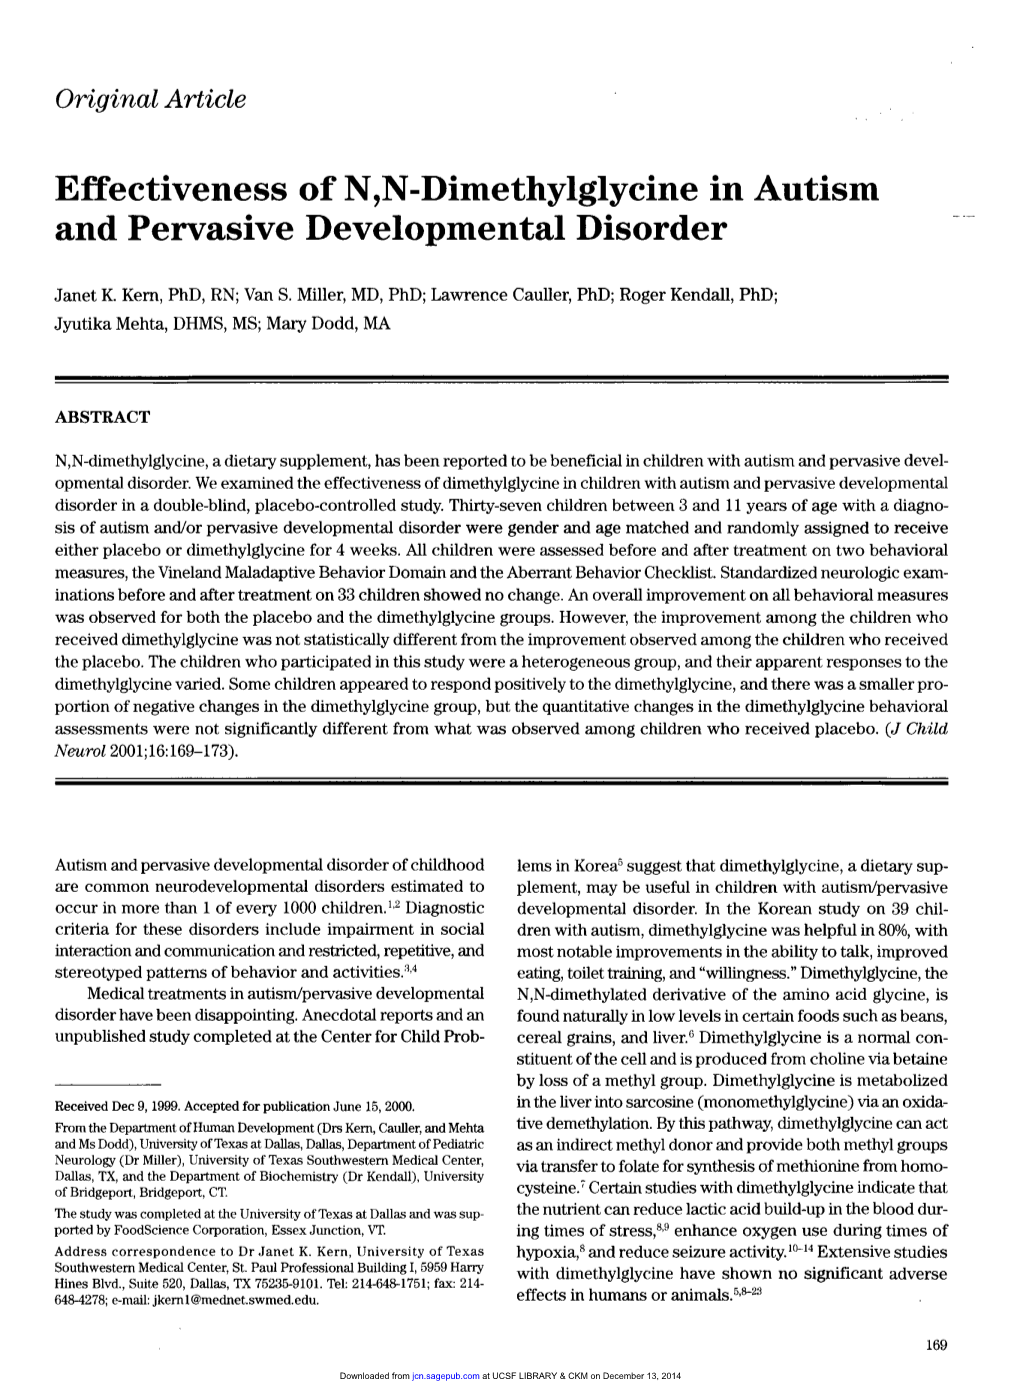 Effectiveness of N,N-Dimethylglycine in Autism and Pervasive Developmental Disorder